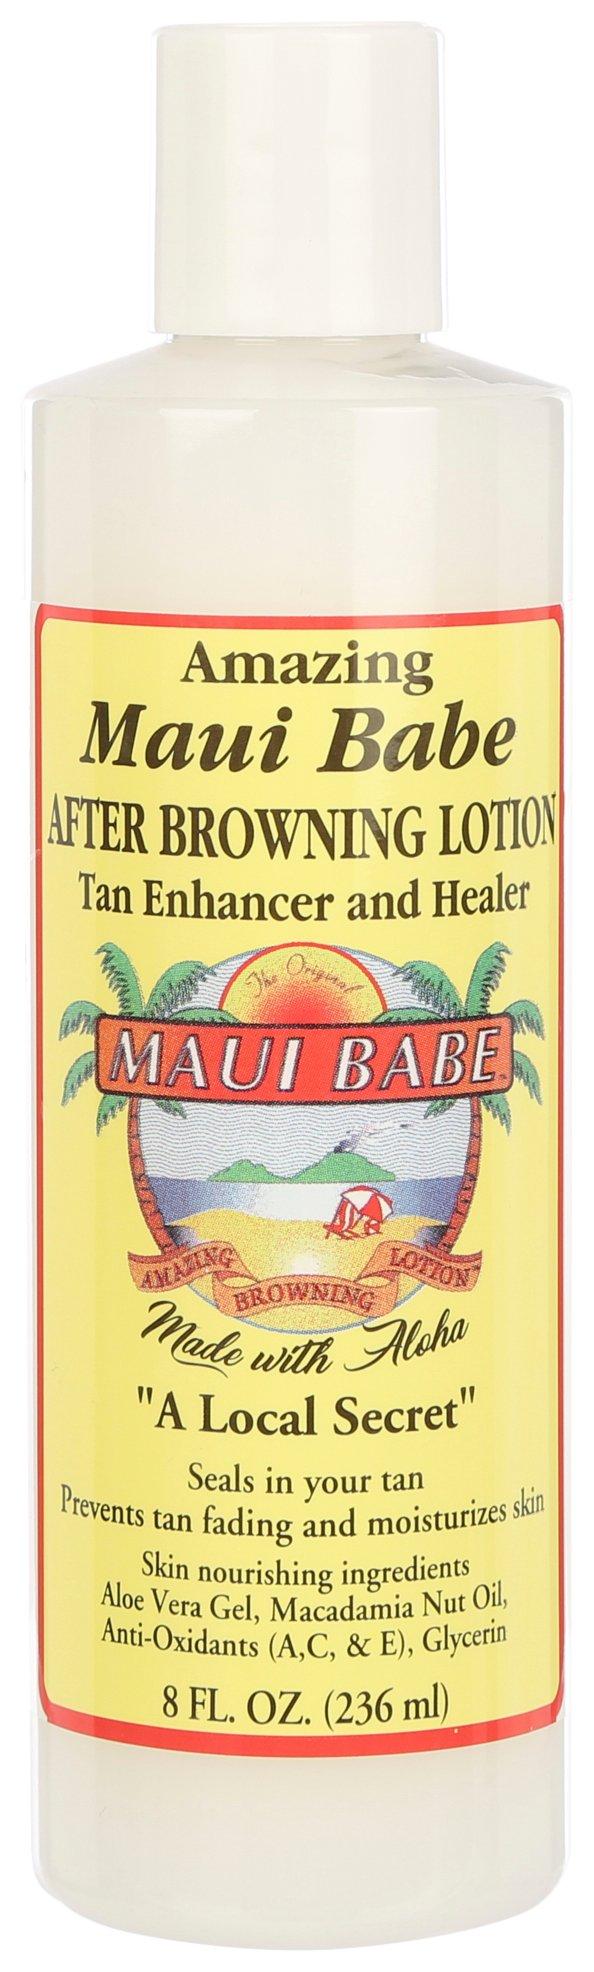 Maui Babe 8 Fl.Oz. Tan Enhancer & Healer